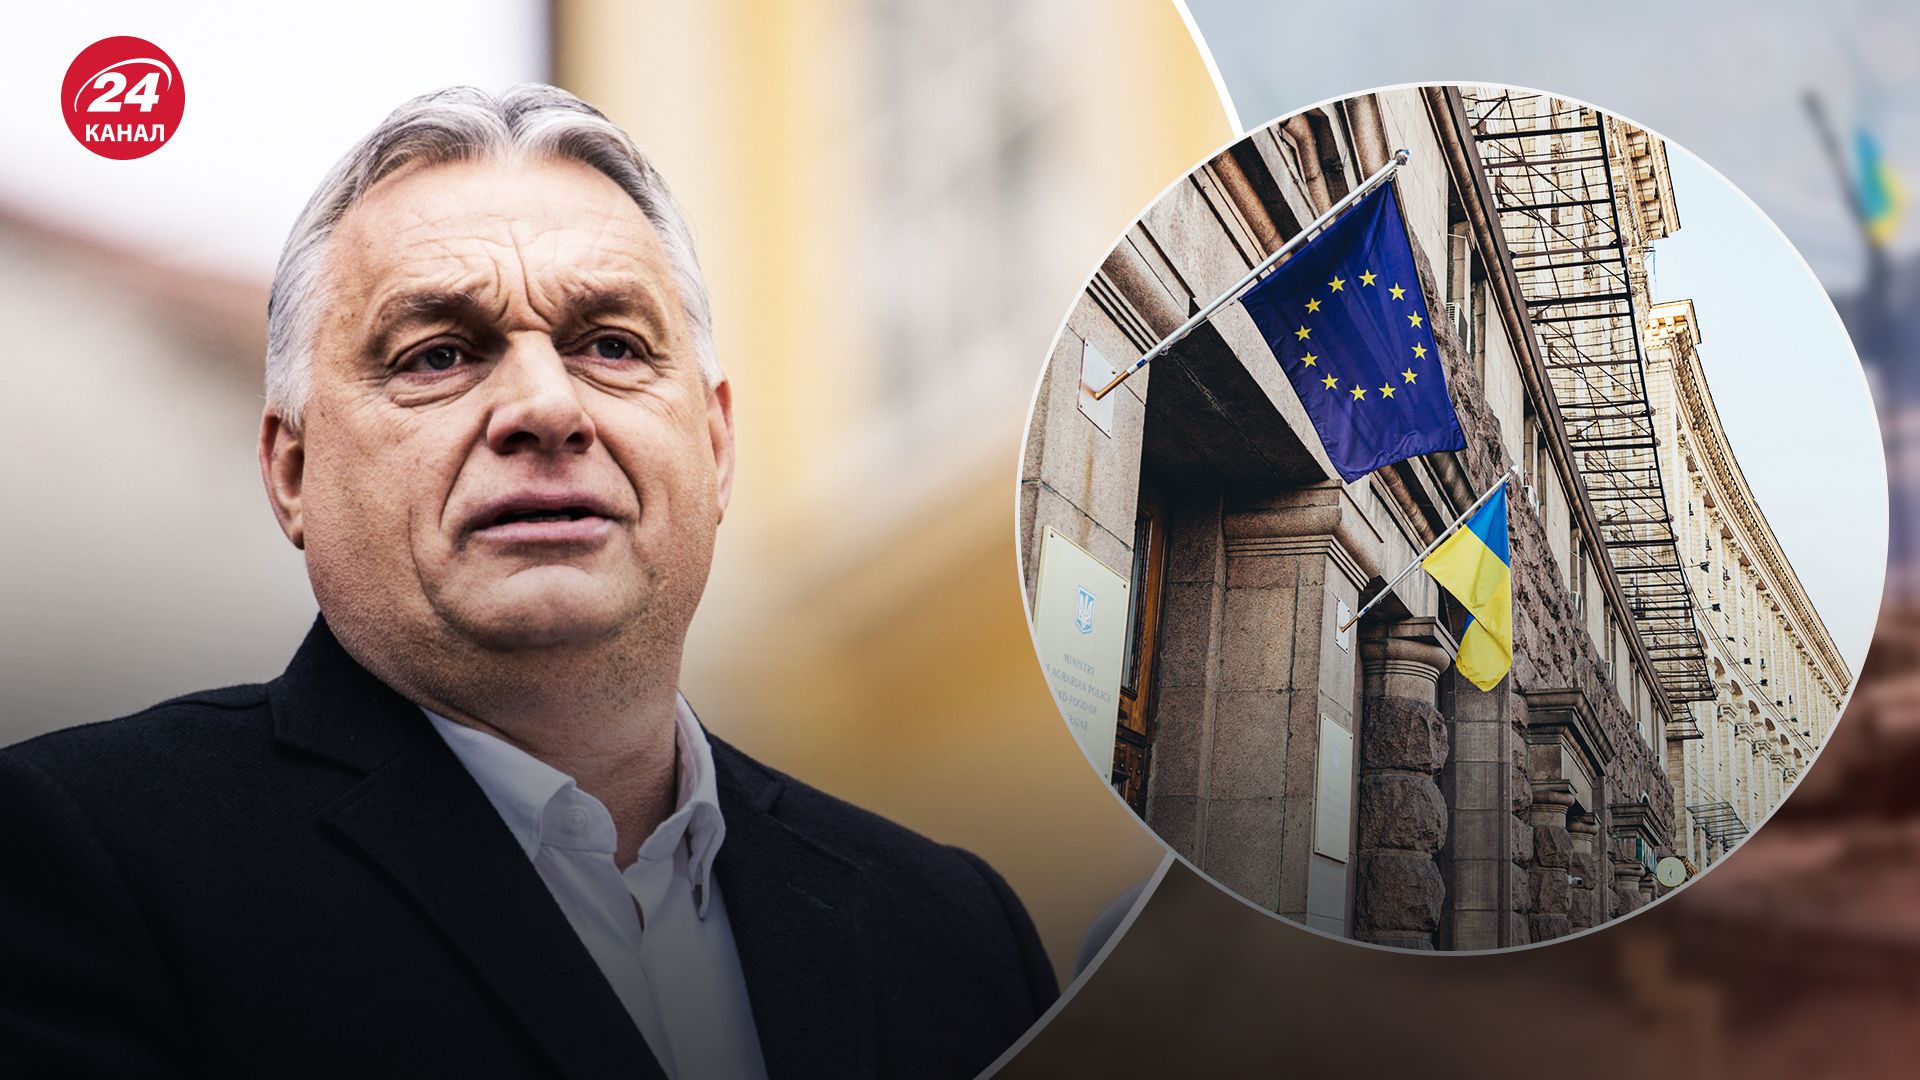 Виктор Орбан отреагировал на переговоры с Украиной о вступлении в ЕС